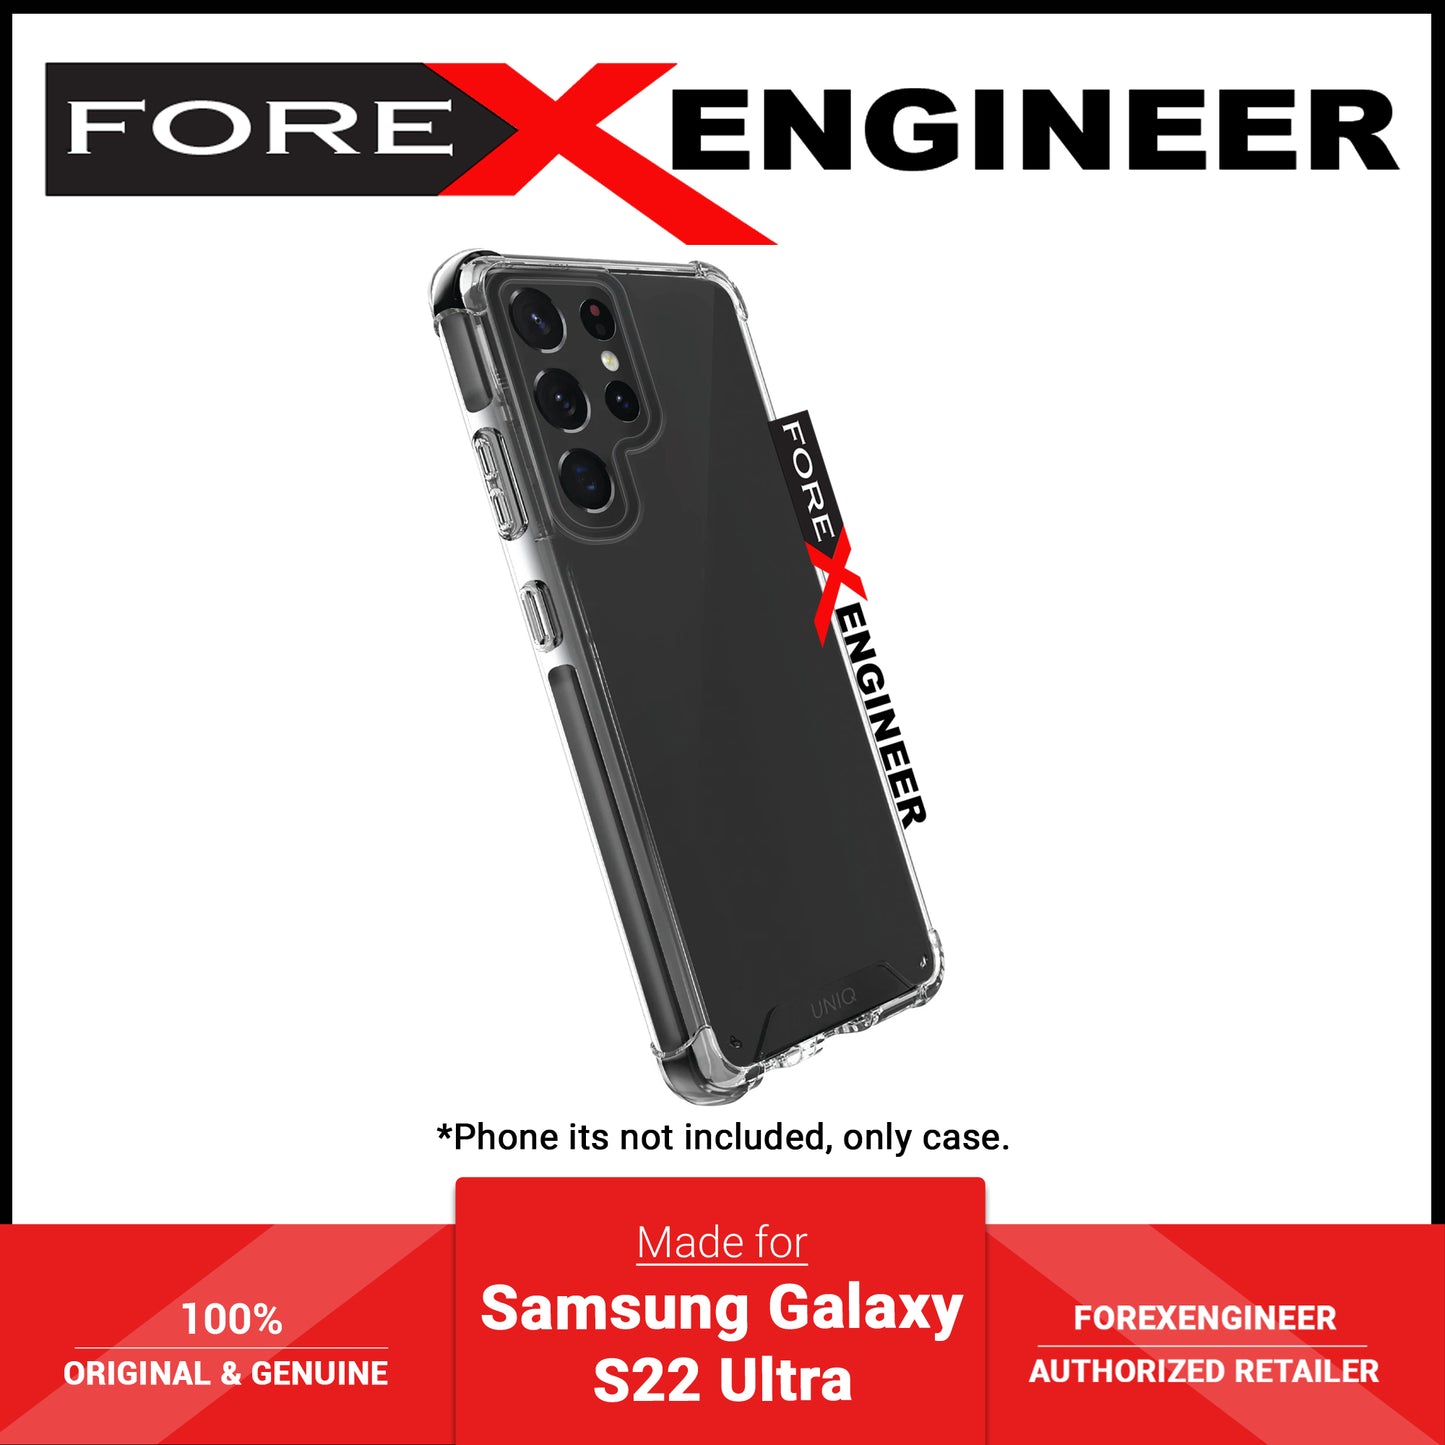 UNIQ Combat for Case for Samsung Galaxy S22 Ultra - Black (Barcode: 8886463679876 )